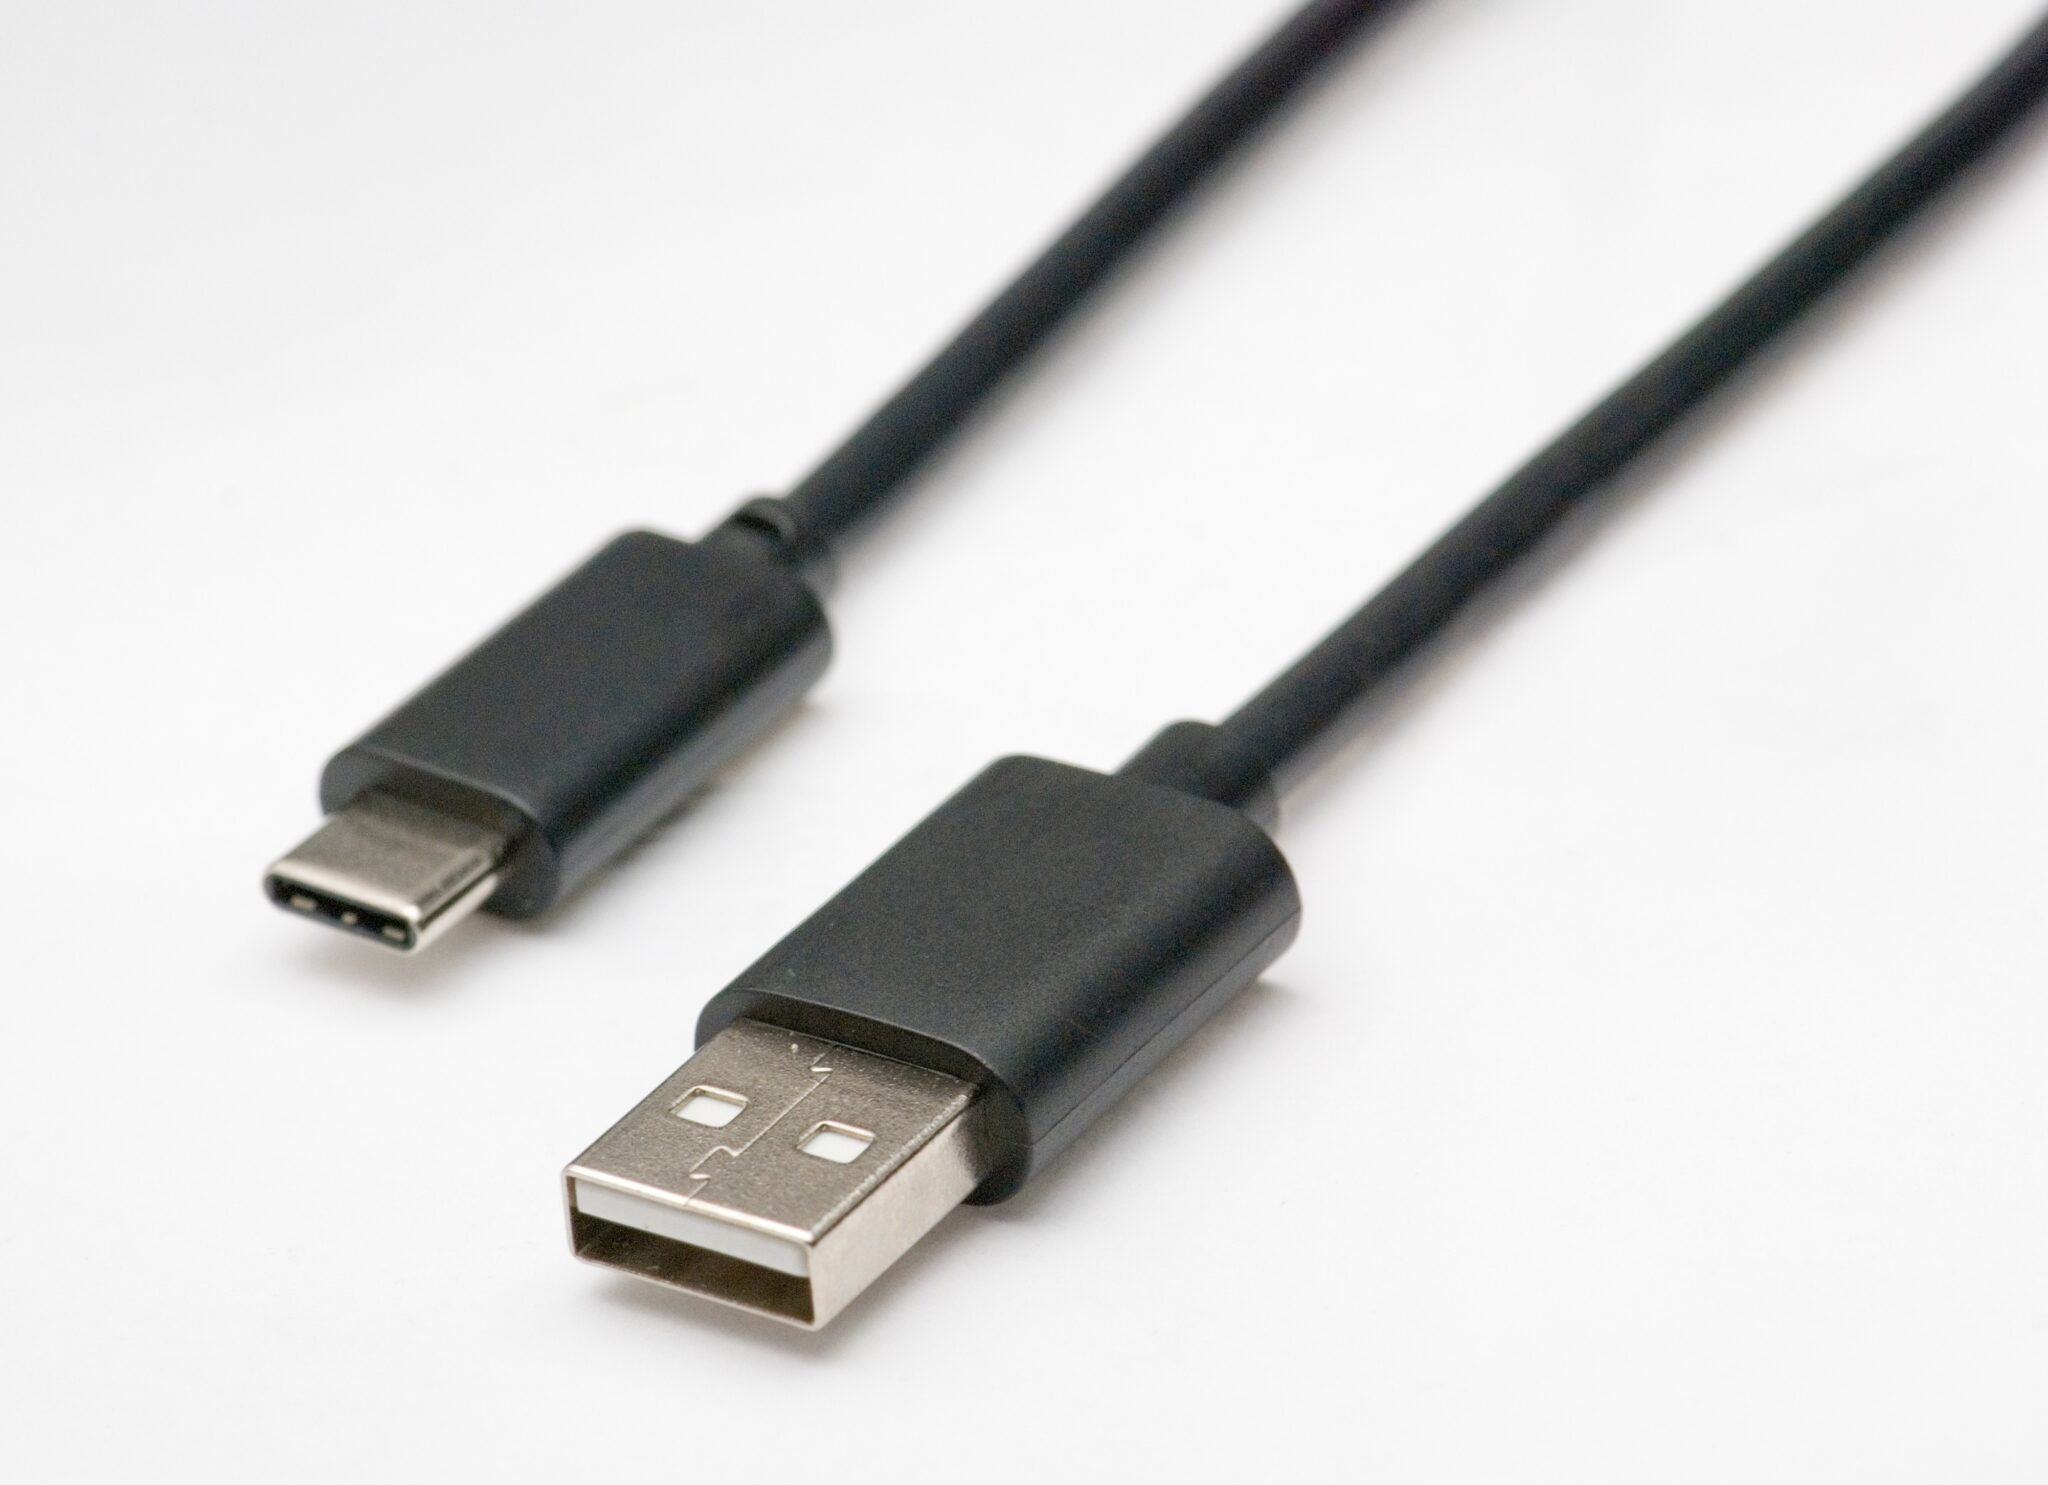 Molex compact USB Type-C connectors